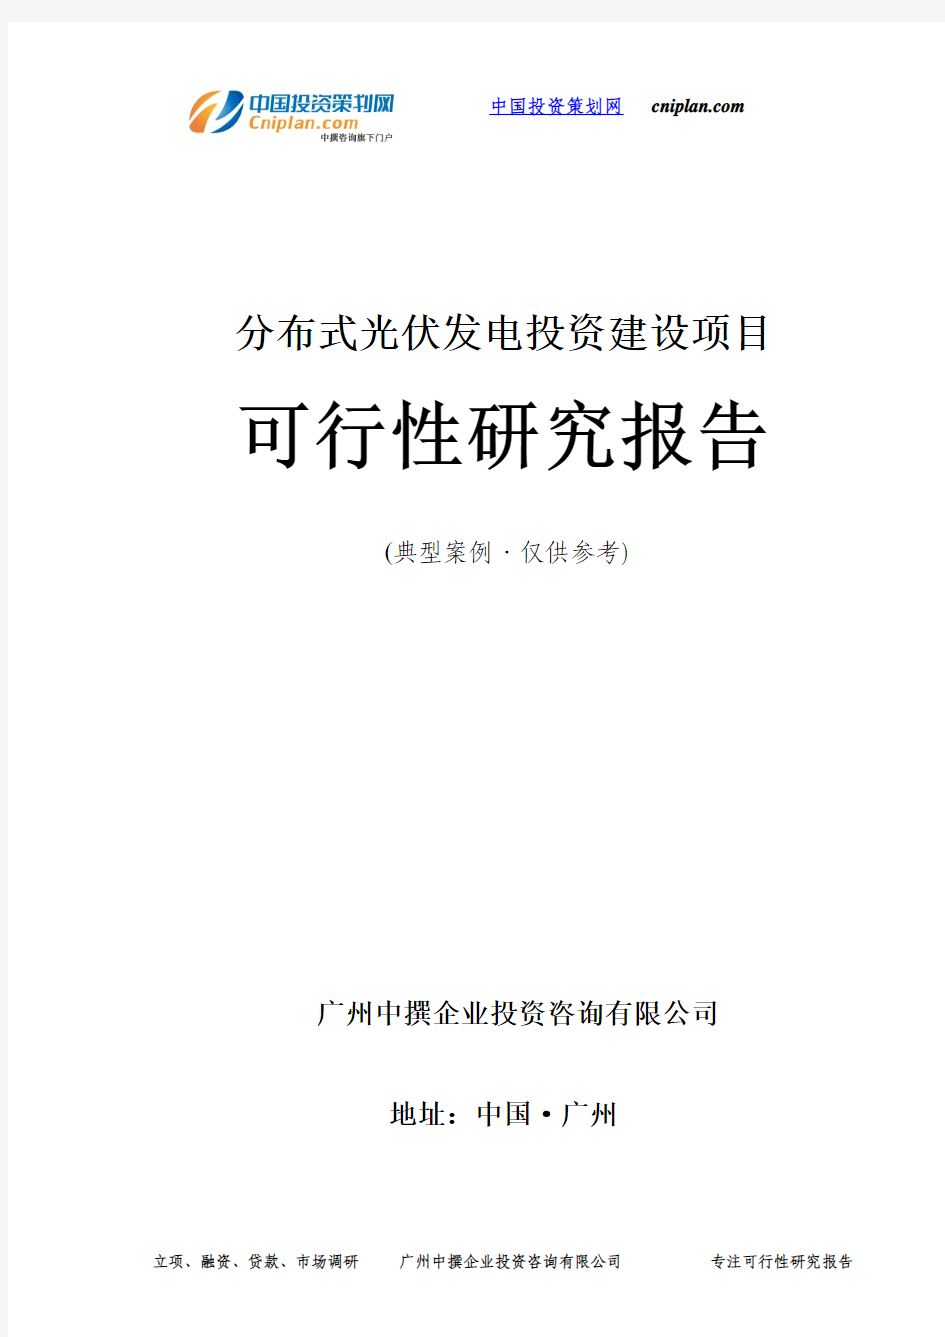 分布式光伏发电投资建设项目可行性研究报告-广州中撰咨询